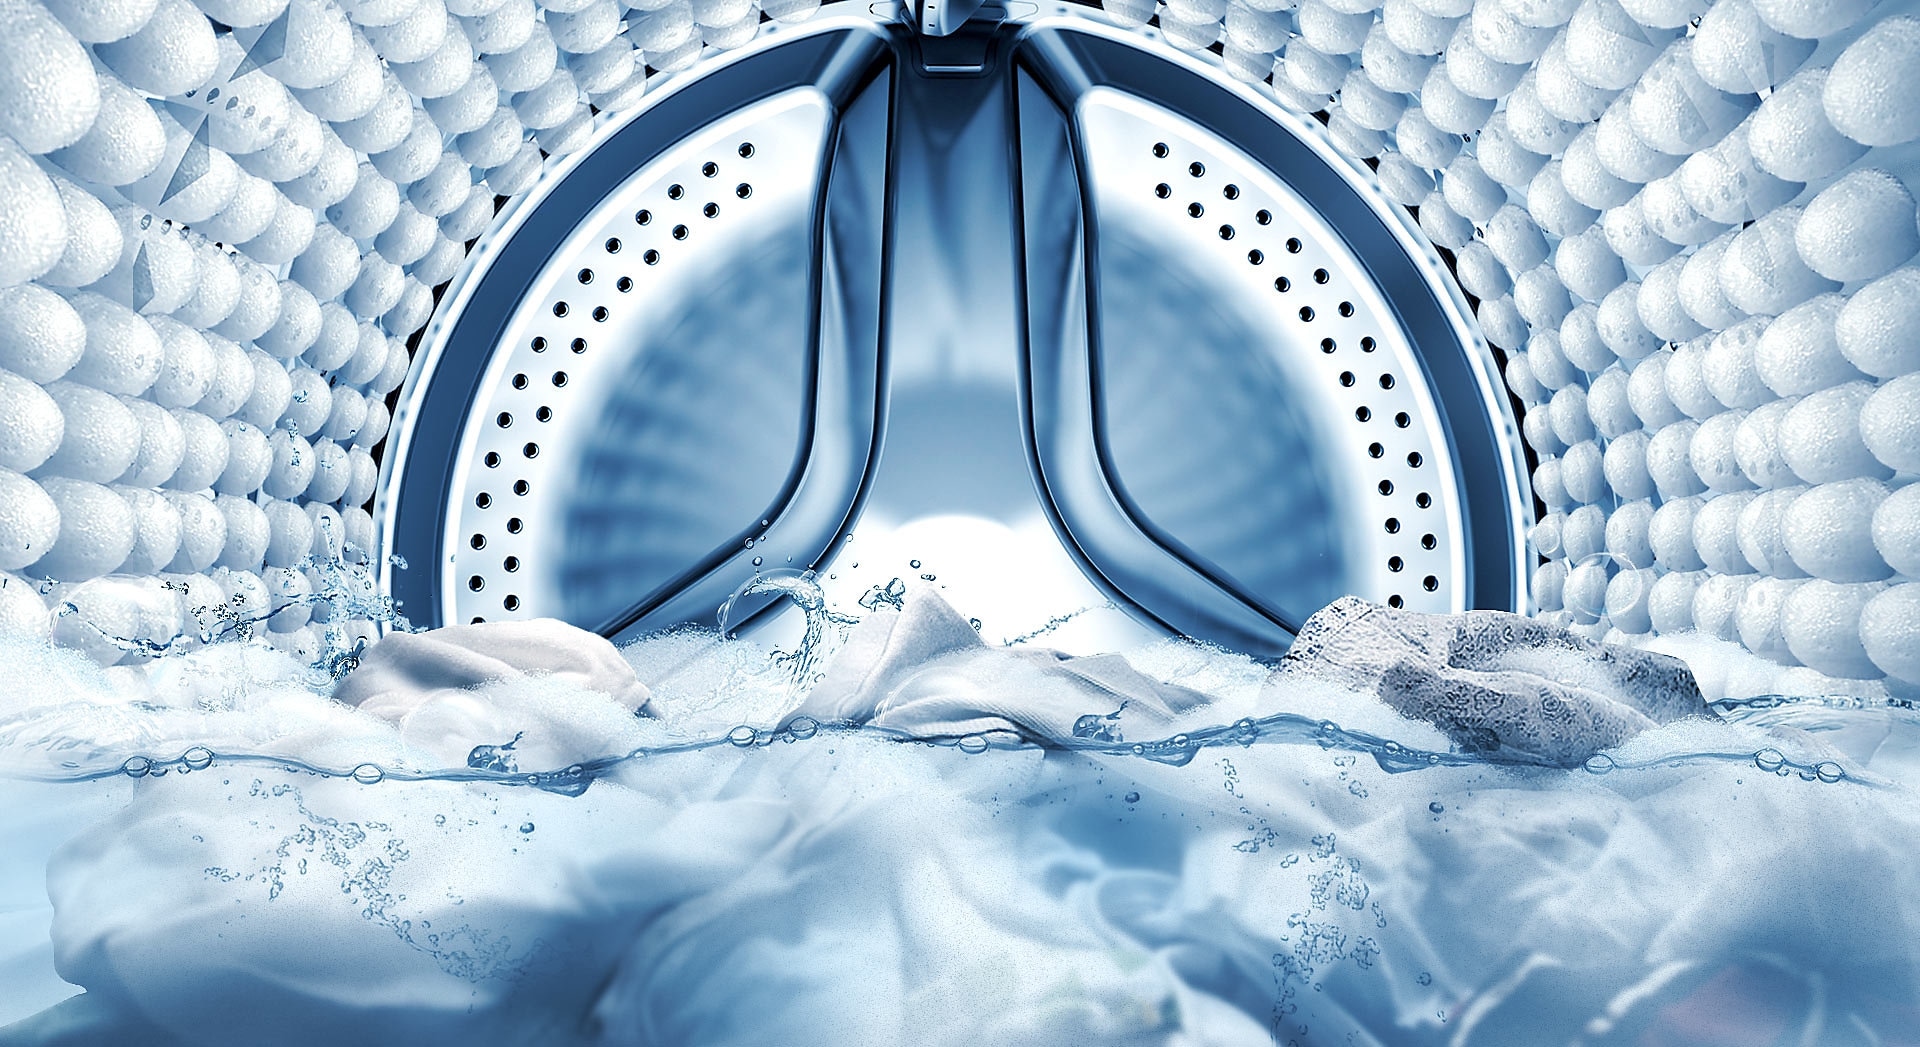 Illustrazione che mostra l'interno del tamburo della lavatrice, in cui appare la schiuma Bubble Soak, che rimuove lo sporco dalle macchie.